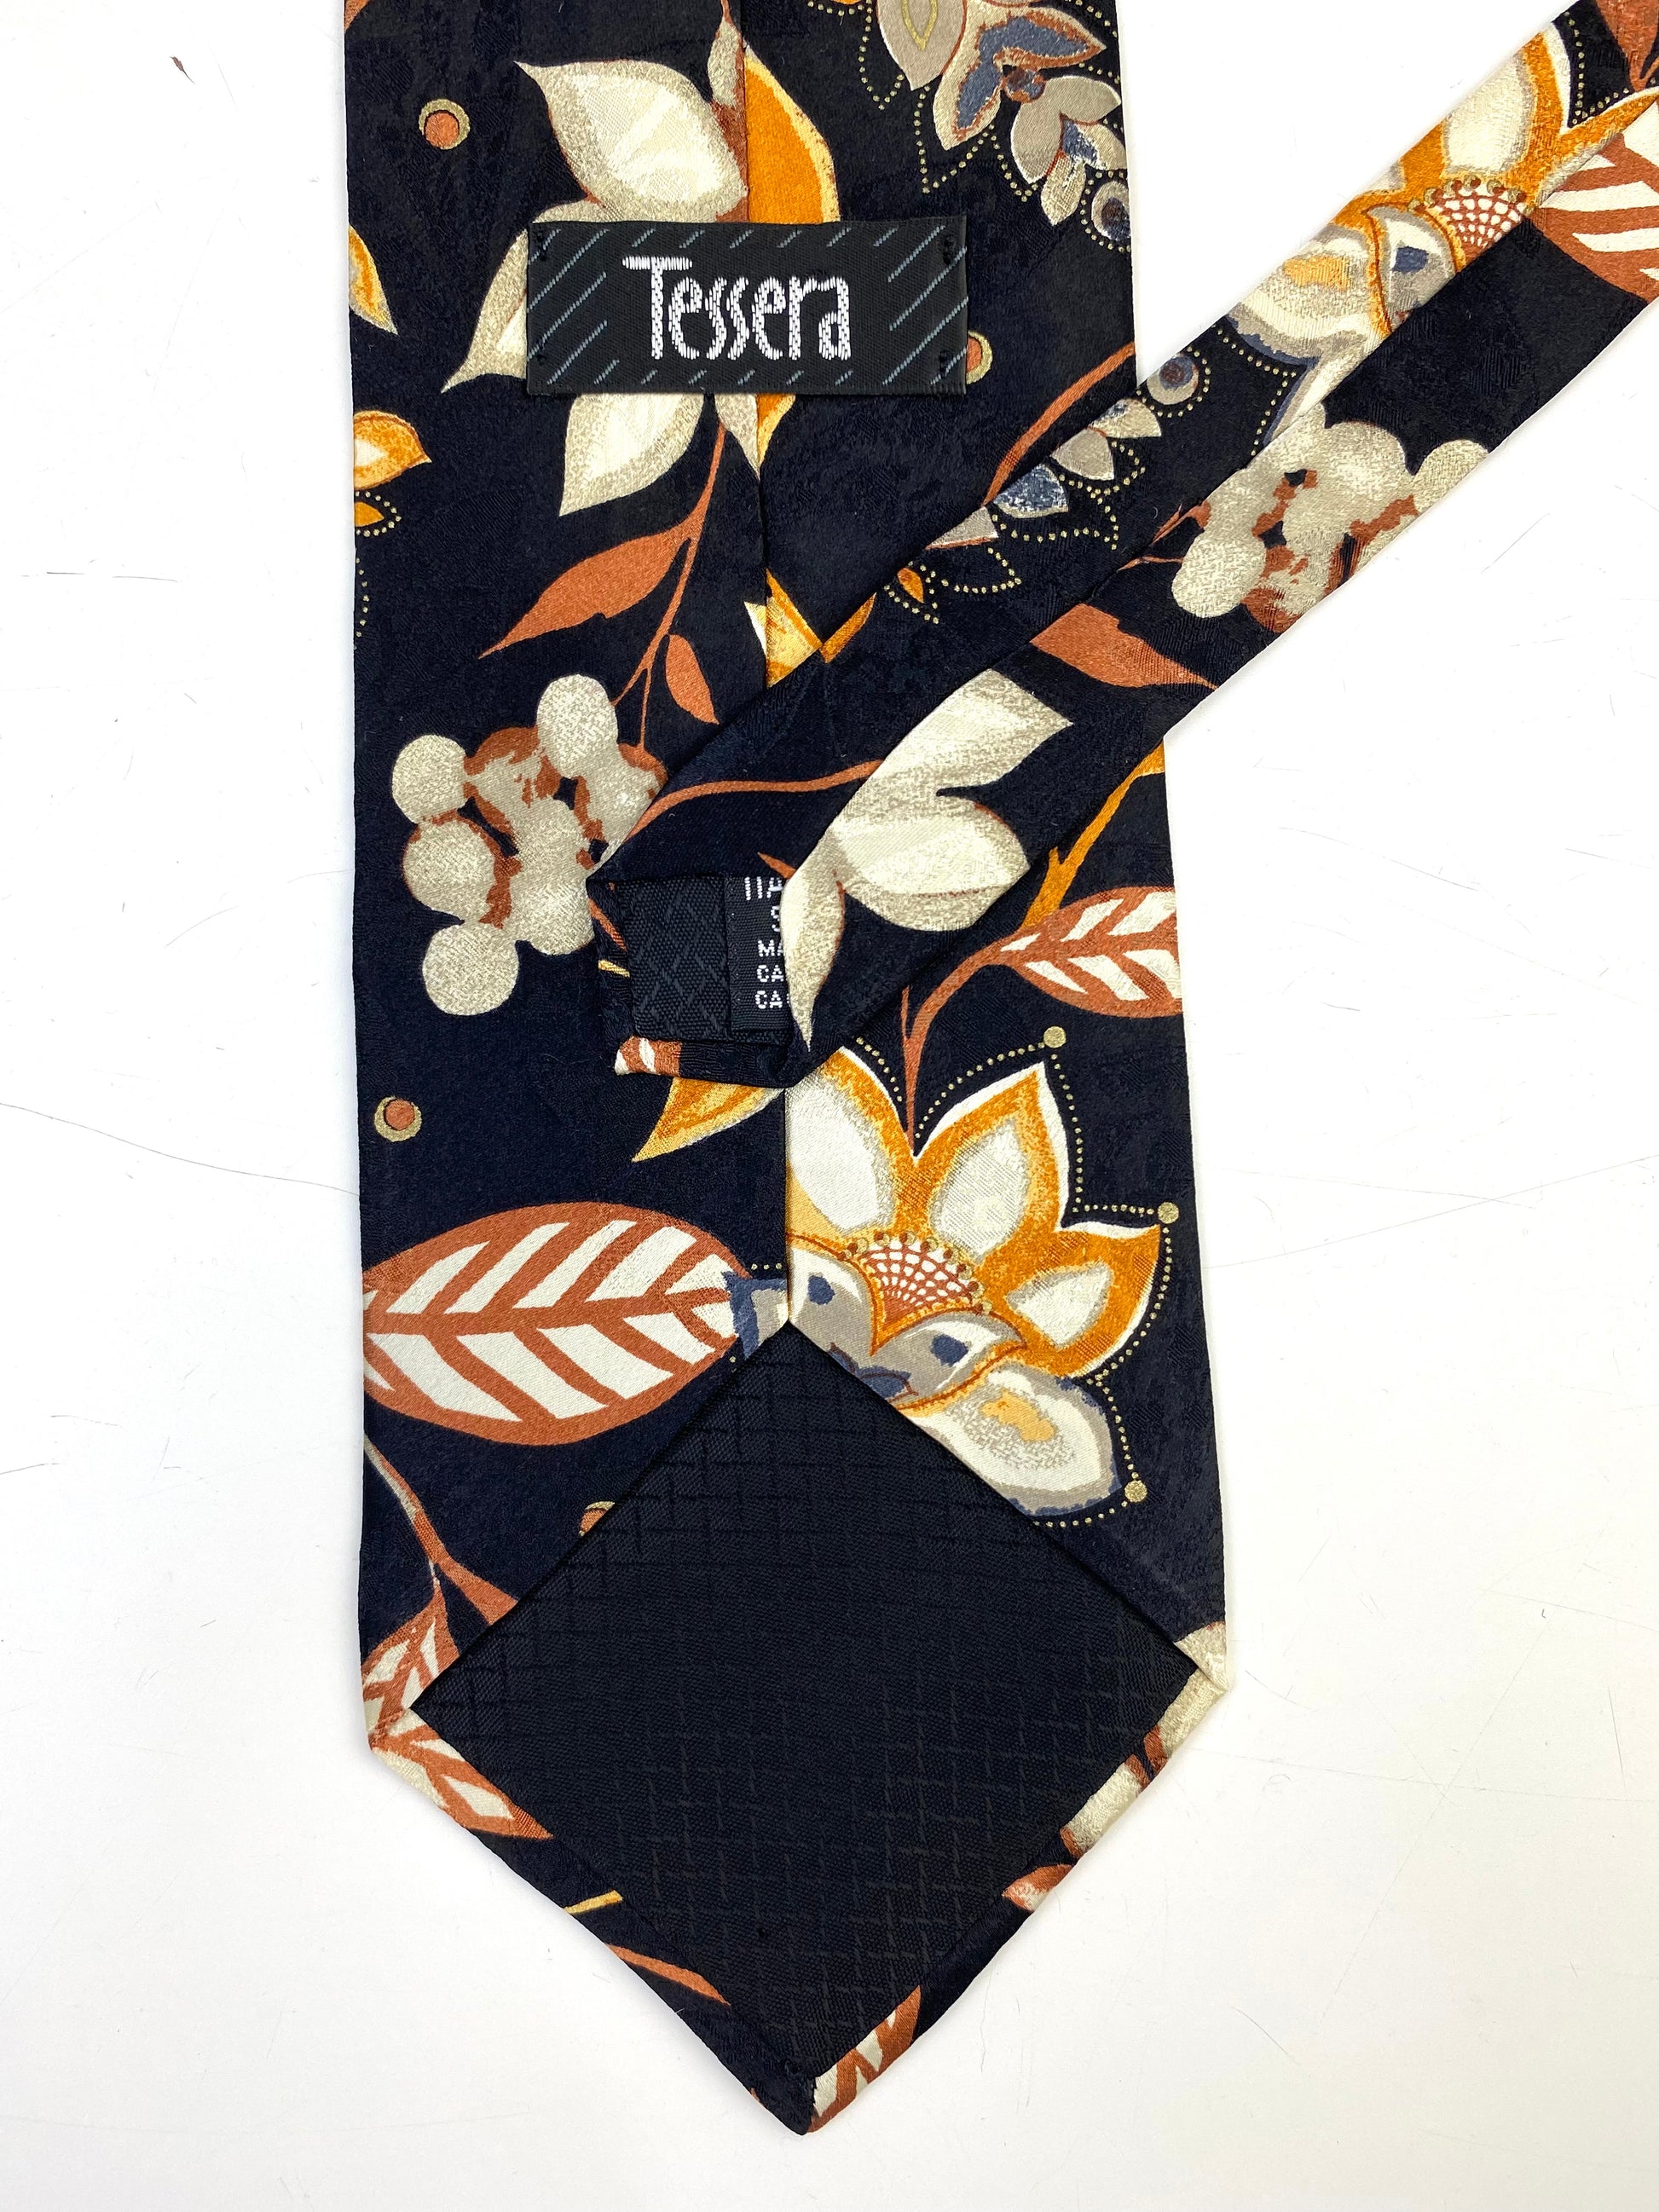 90s Deadstock Silk Necktie, Men's Vintage Black/ Gold Floral Pattern Tie, NOS